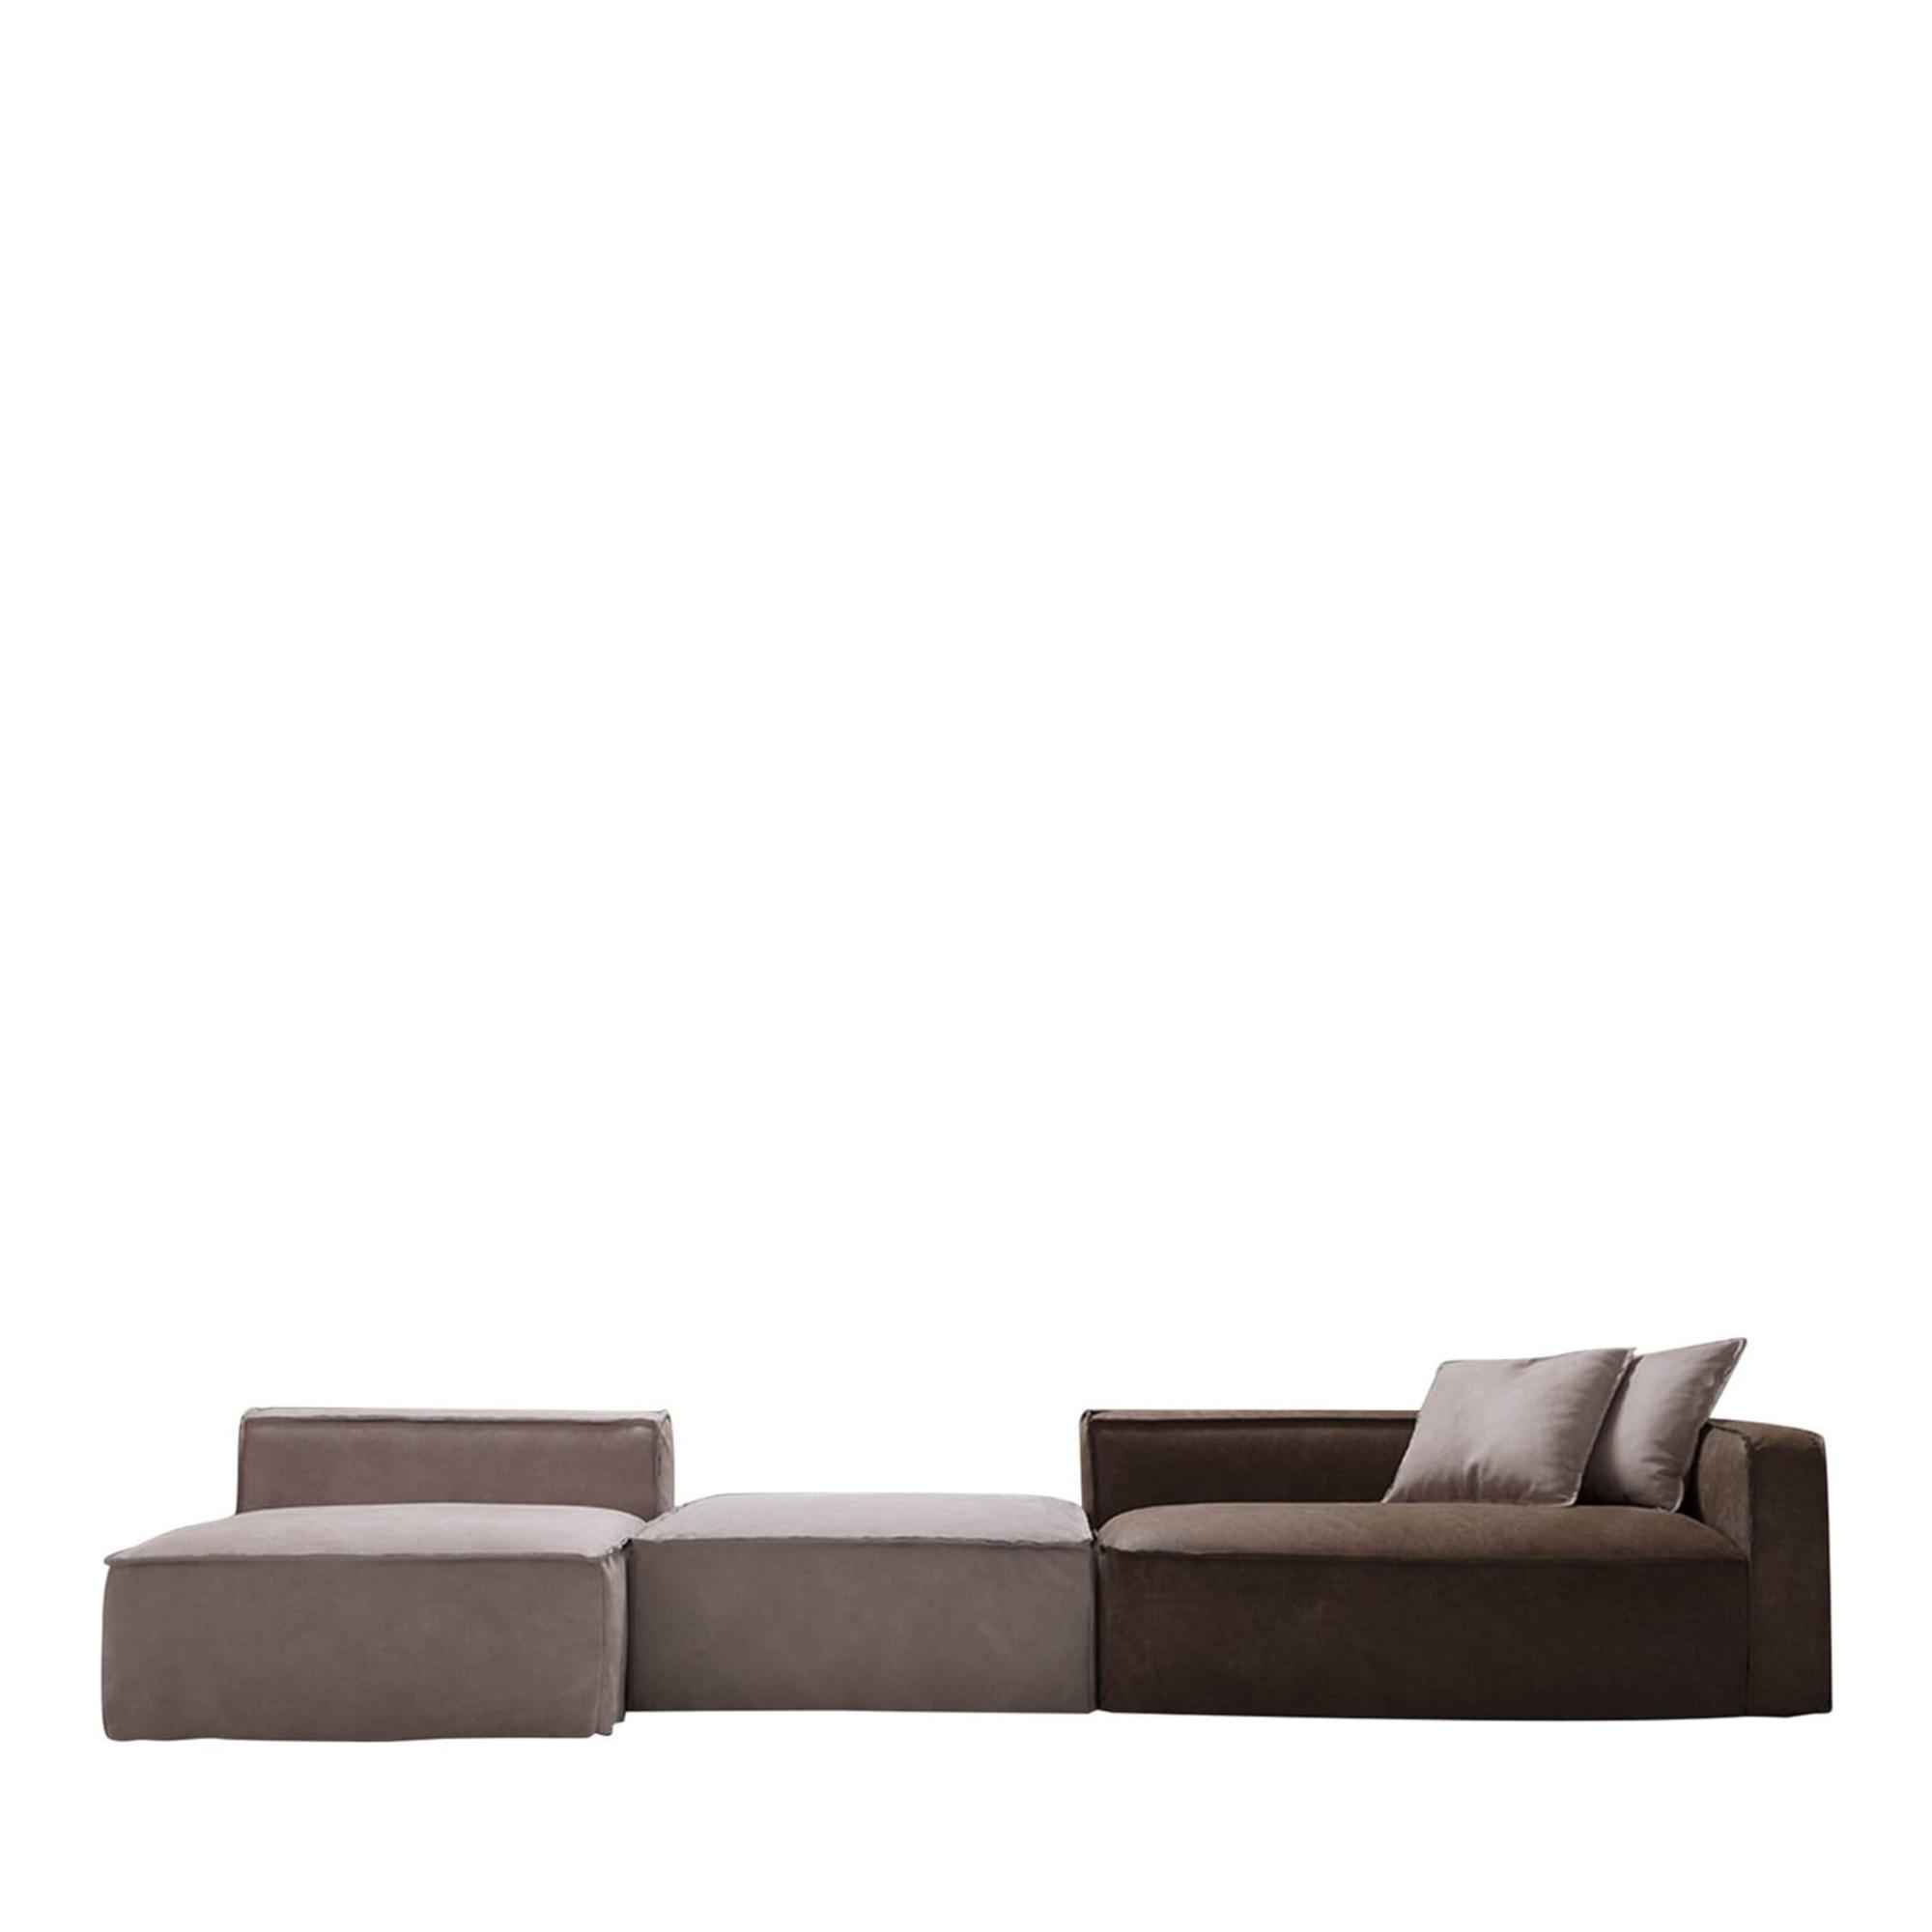 Softly Modular Italian Design Sofa